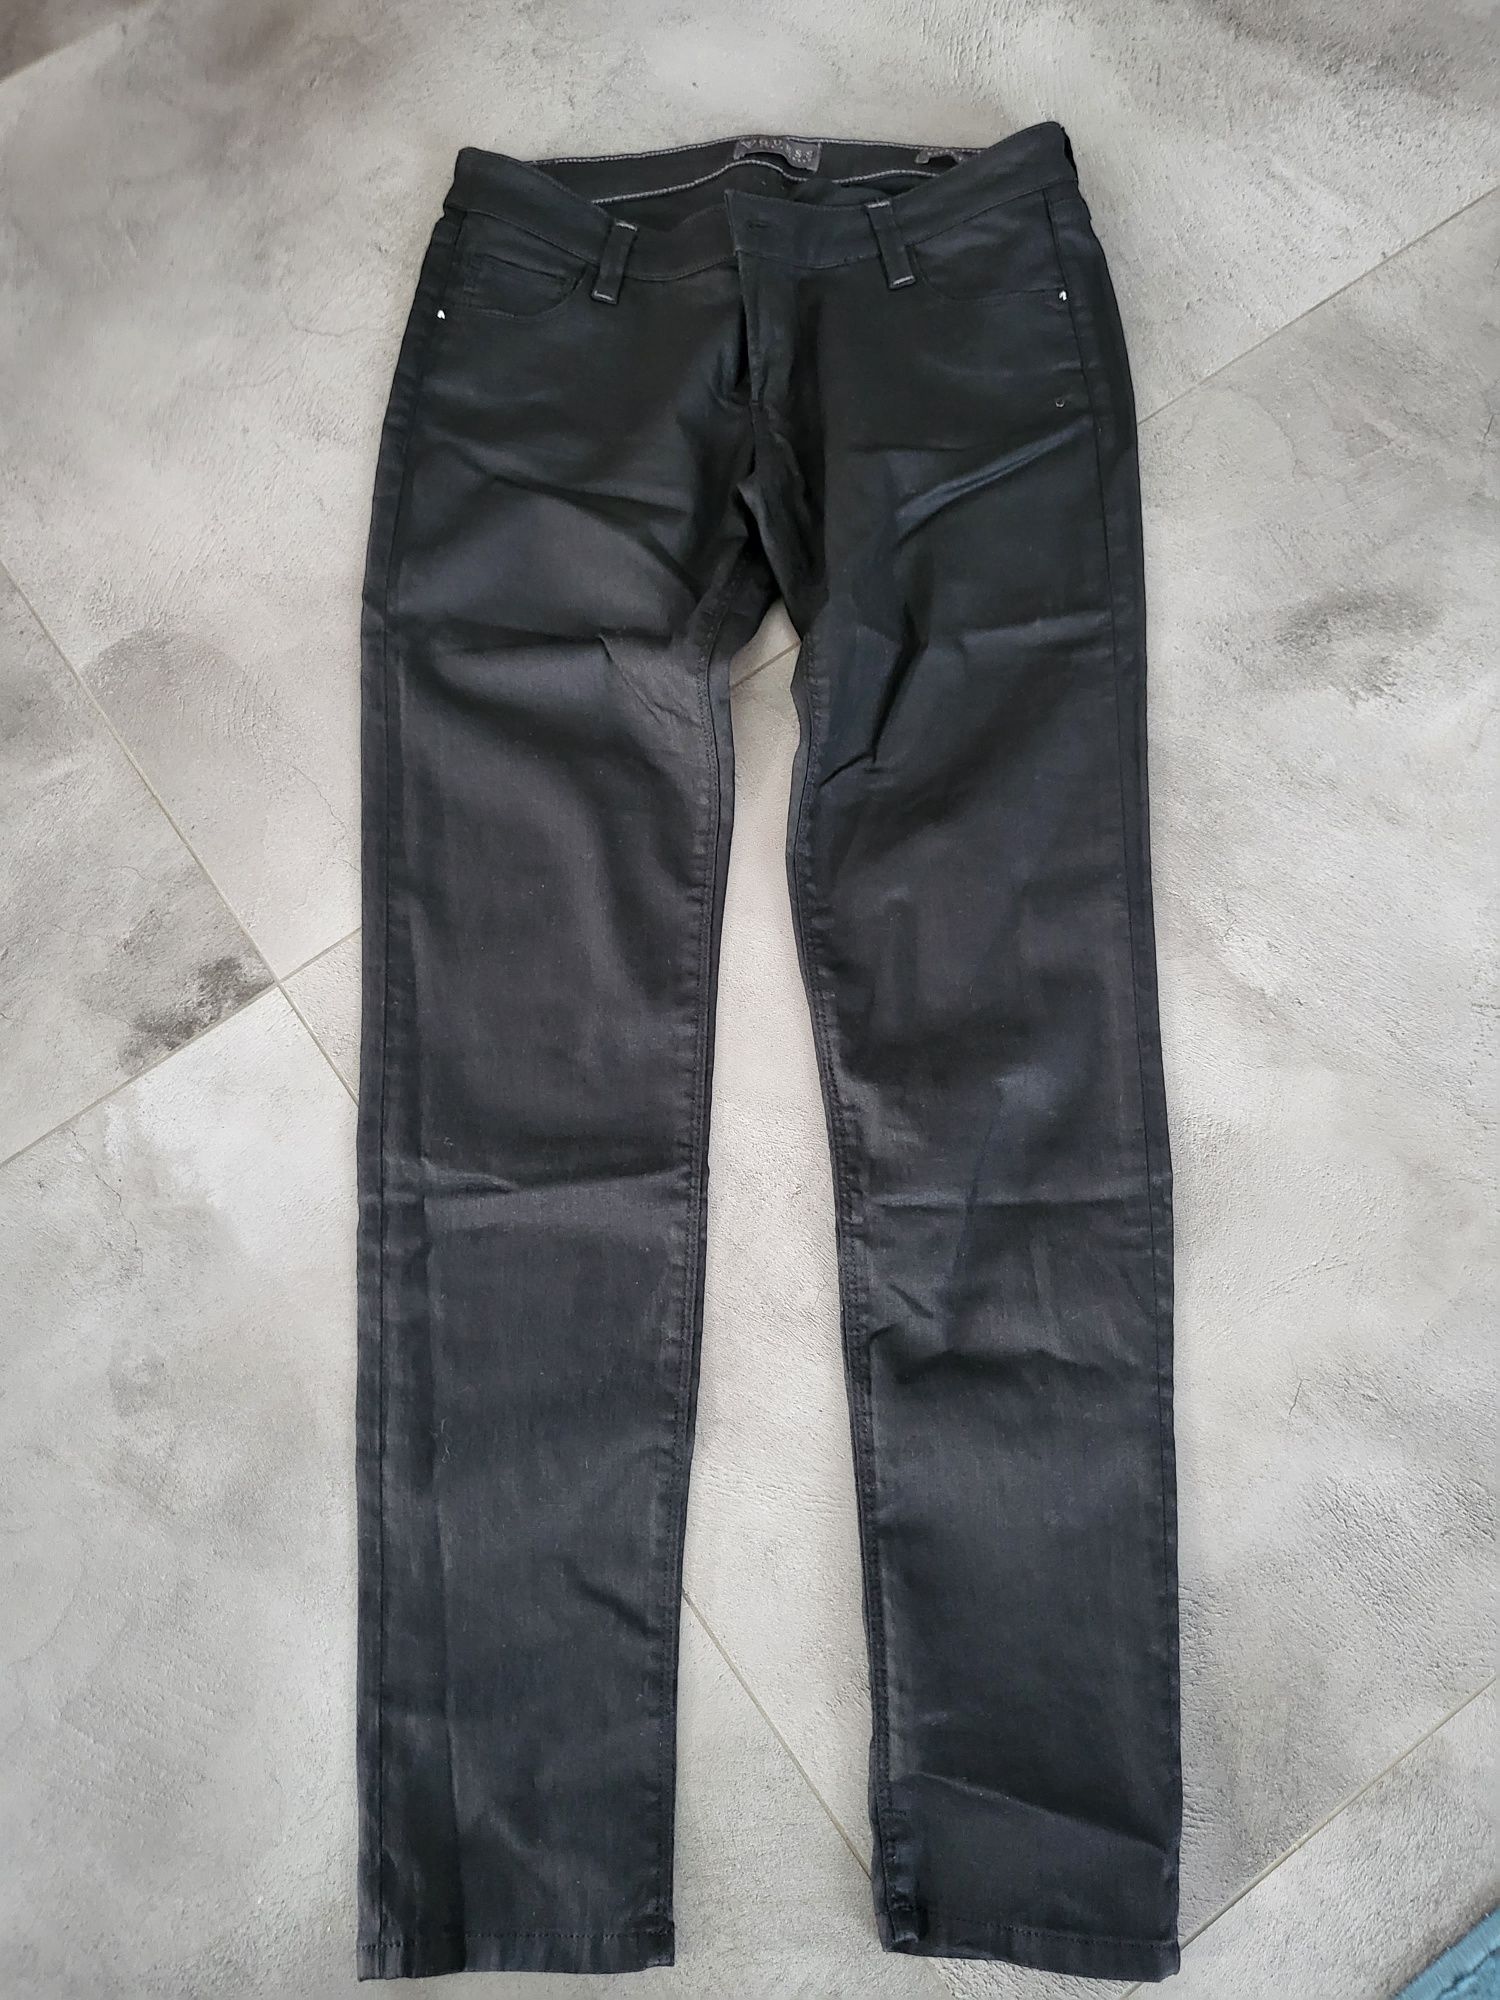 Guess spodnie jeansowe damskie nowe bez metek rozm.31